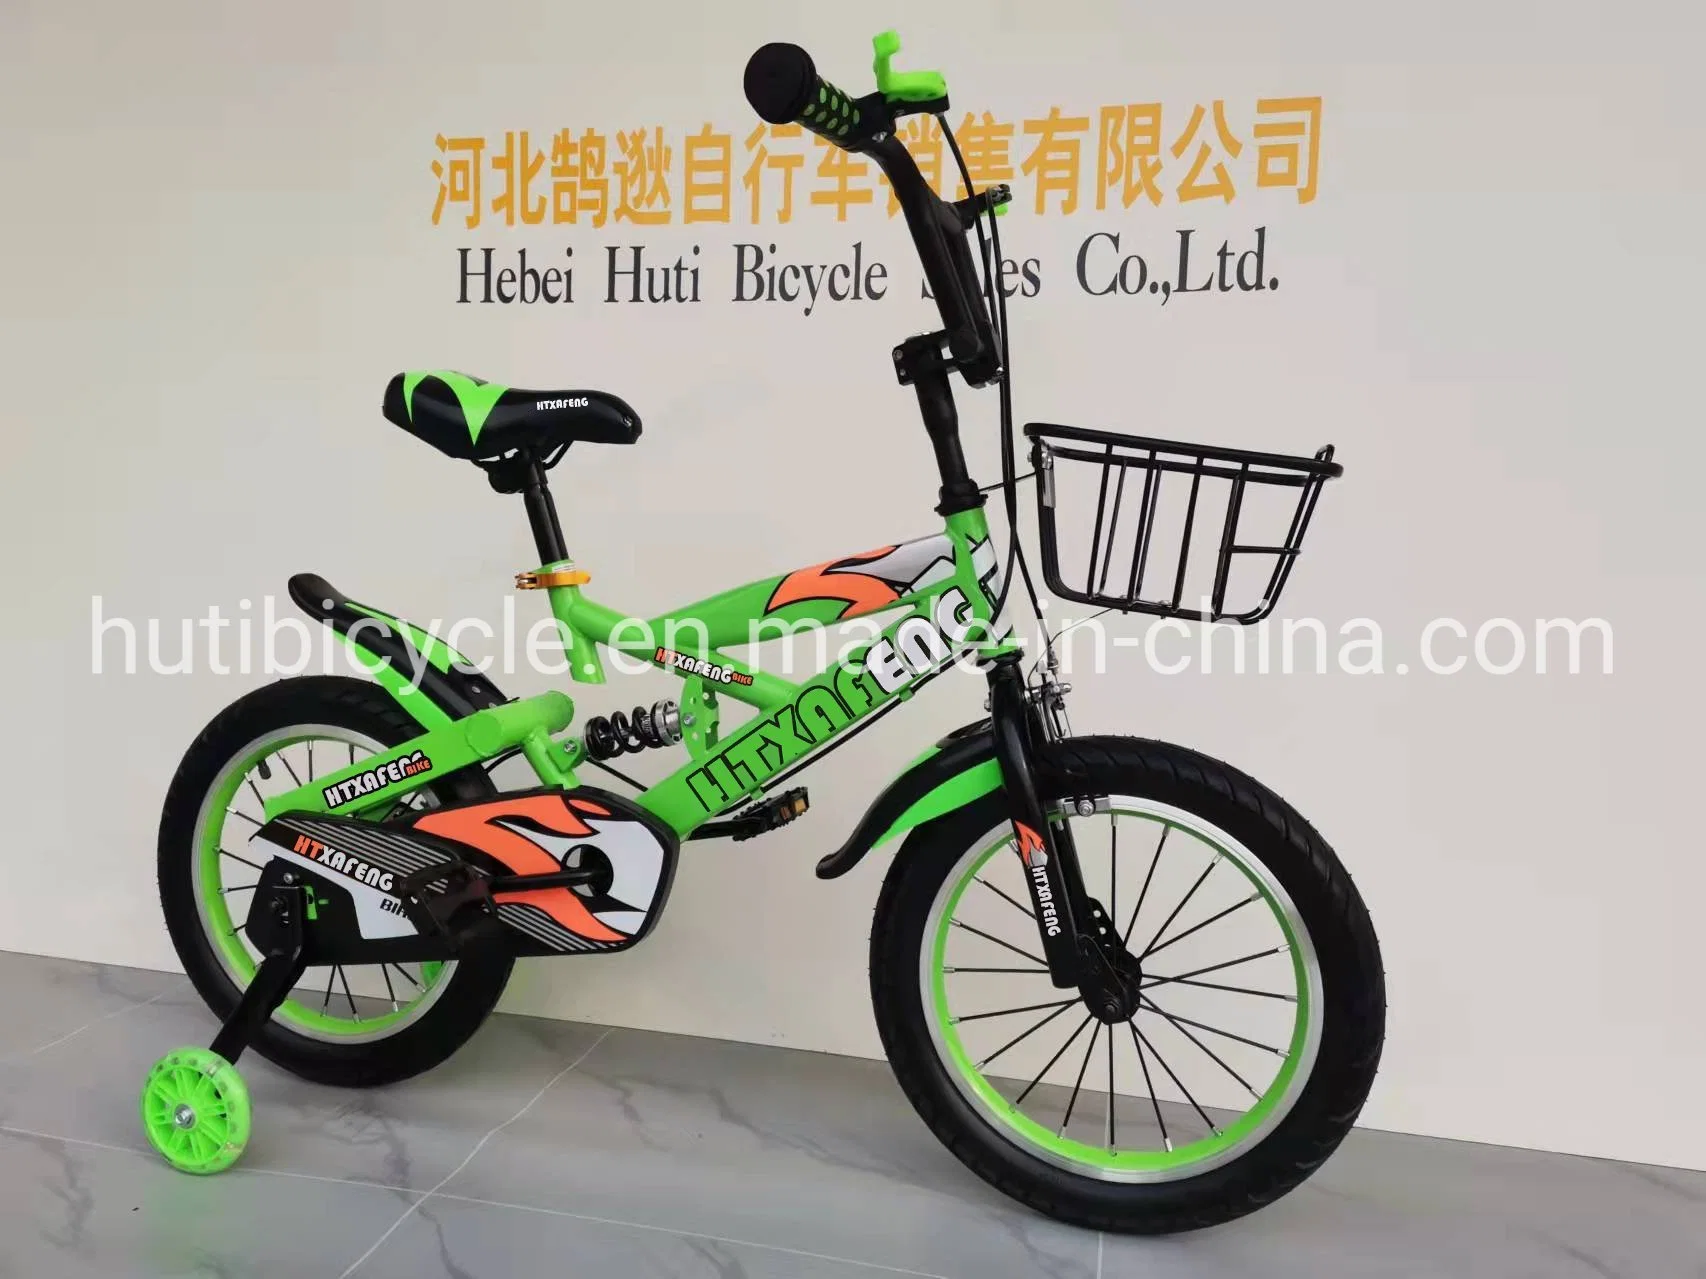 أوكازيون مباشر للمصنع 16 18 20 بوصة دراجة للأطفال شهادة CE دراجة طريق Bicicicleta ألوان متعددة خيارات دراجة الأطفال مع عجلات التدريب ومكبح اليد